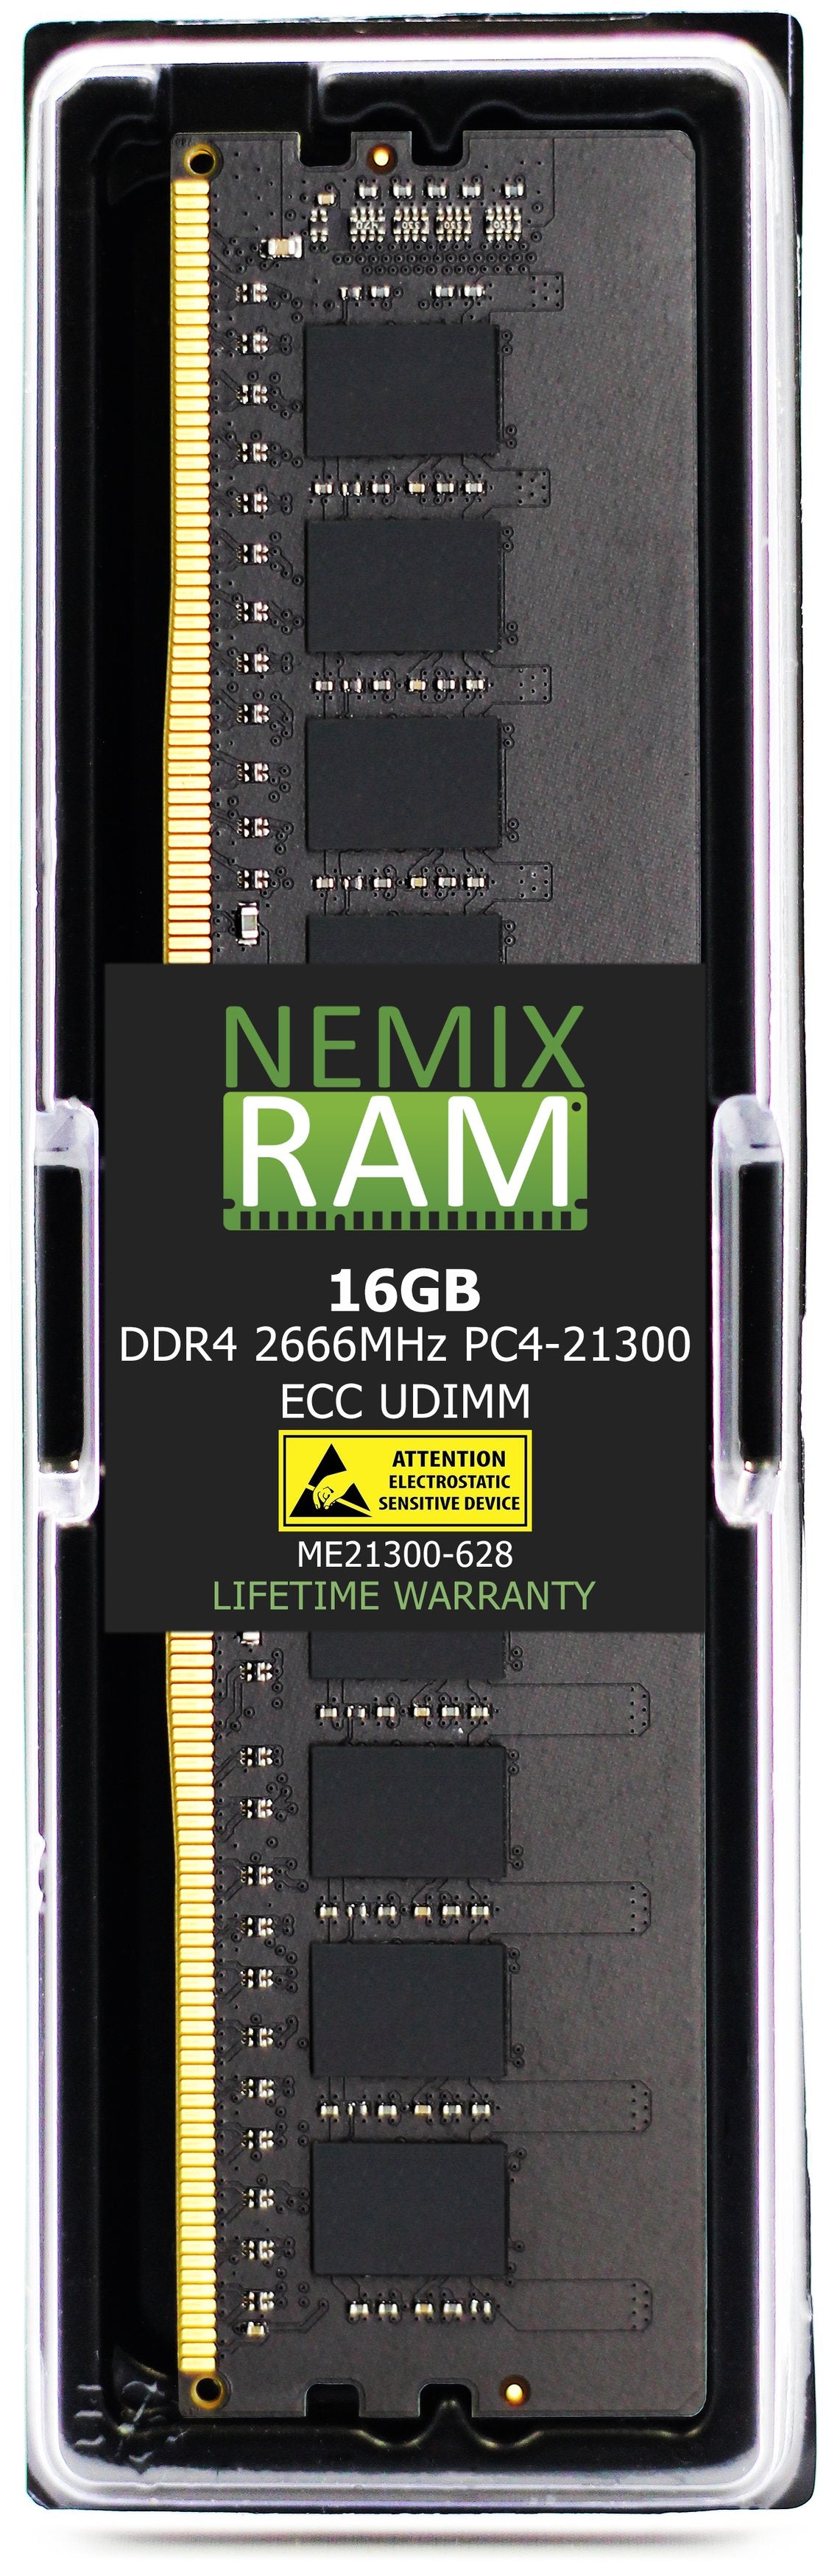 16GB DDR4 2666MHZ PC4-21300 VLP ECC UDIMM Compatible with Supermicro MEM-DR416L-CV02-EU26